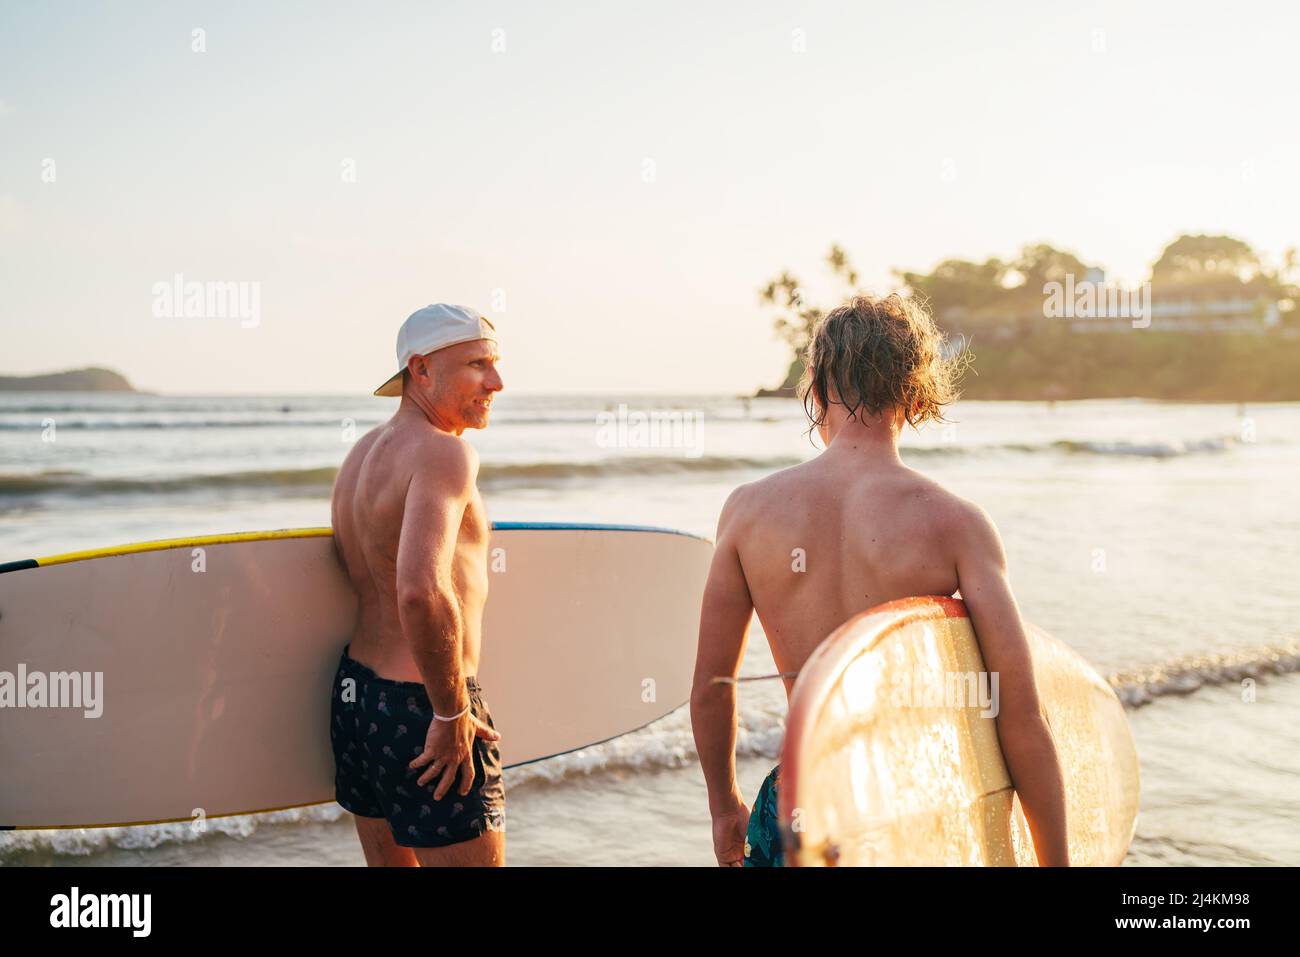 Teen boy mit Surfbrett gehen zum Meer zum Surfen mit Vater auf Sri Lanka Insel. Sie haben einen Winterurlaub und genießen ein wunderschönes Sonnenuntergangslicht Stockfoto